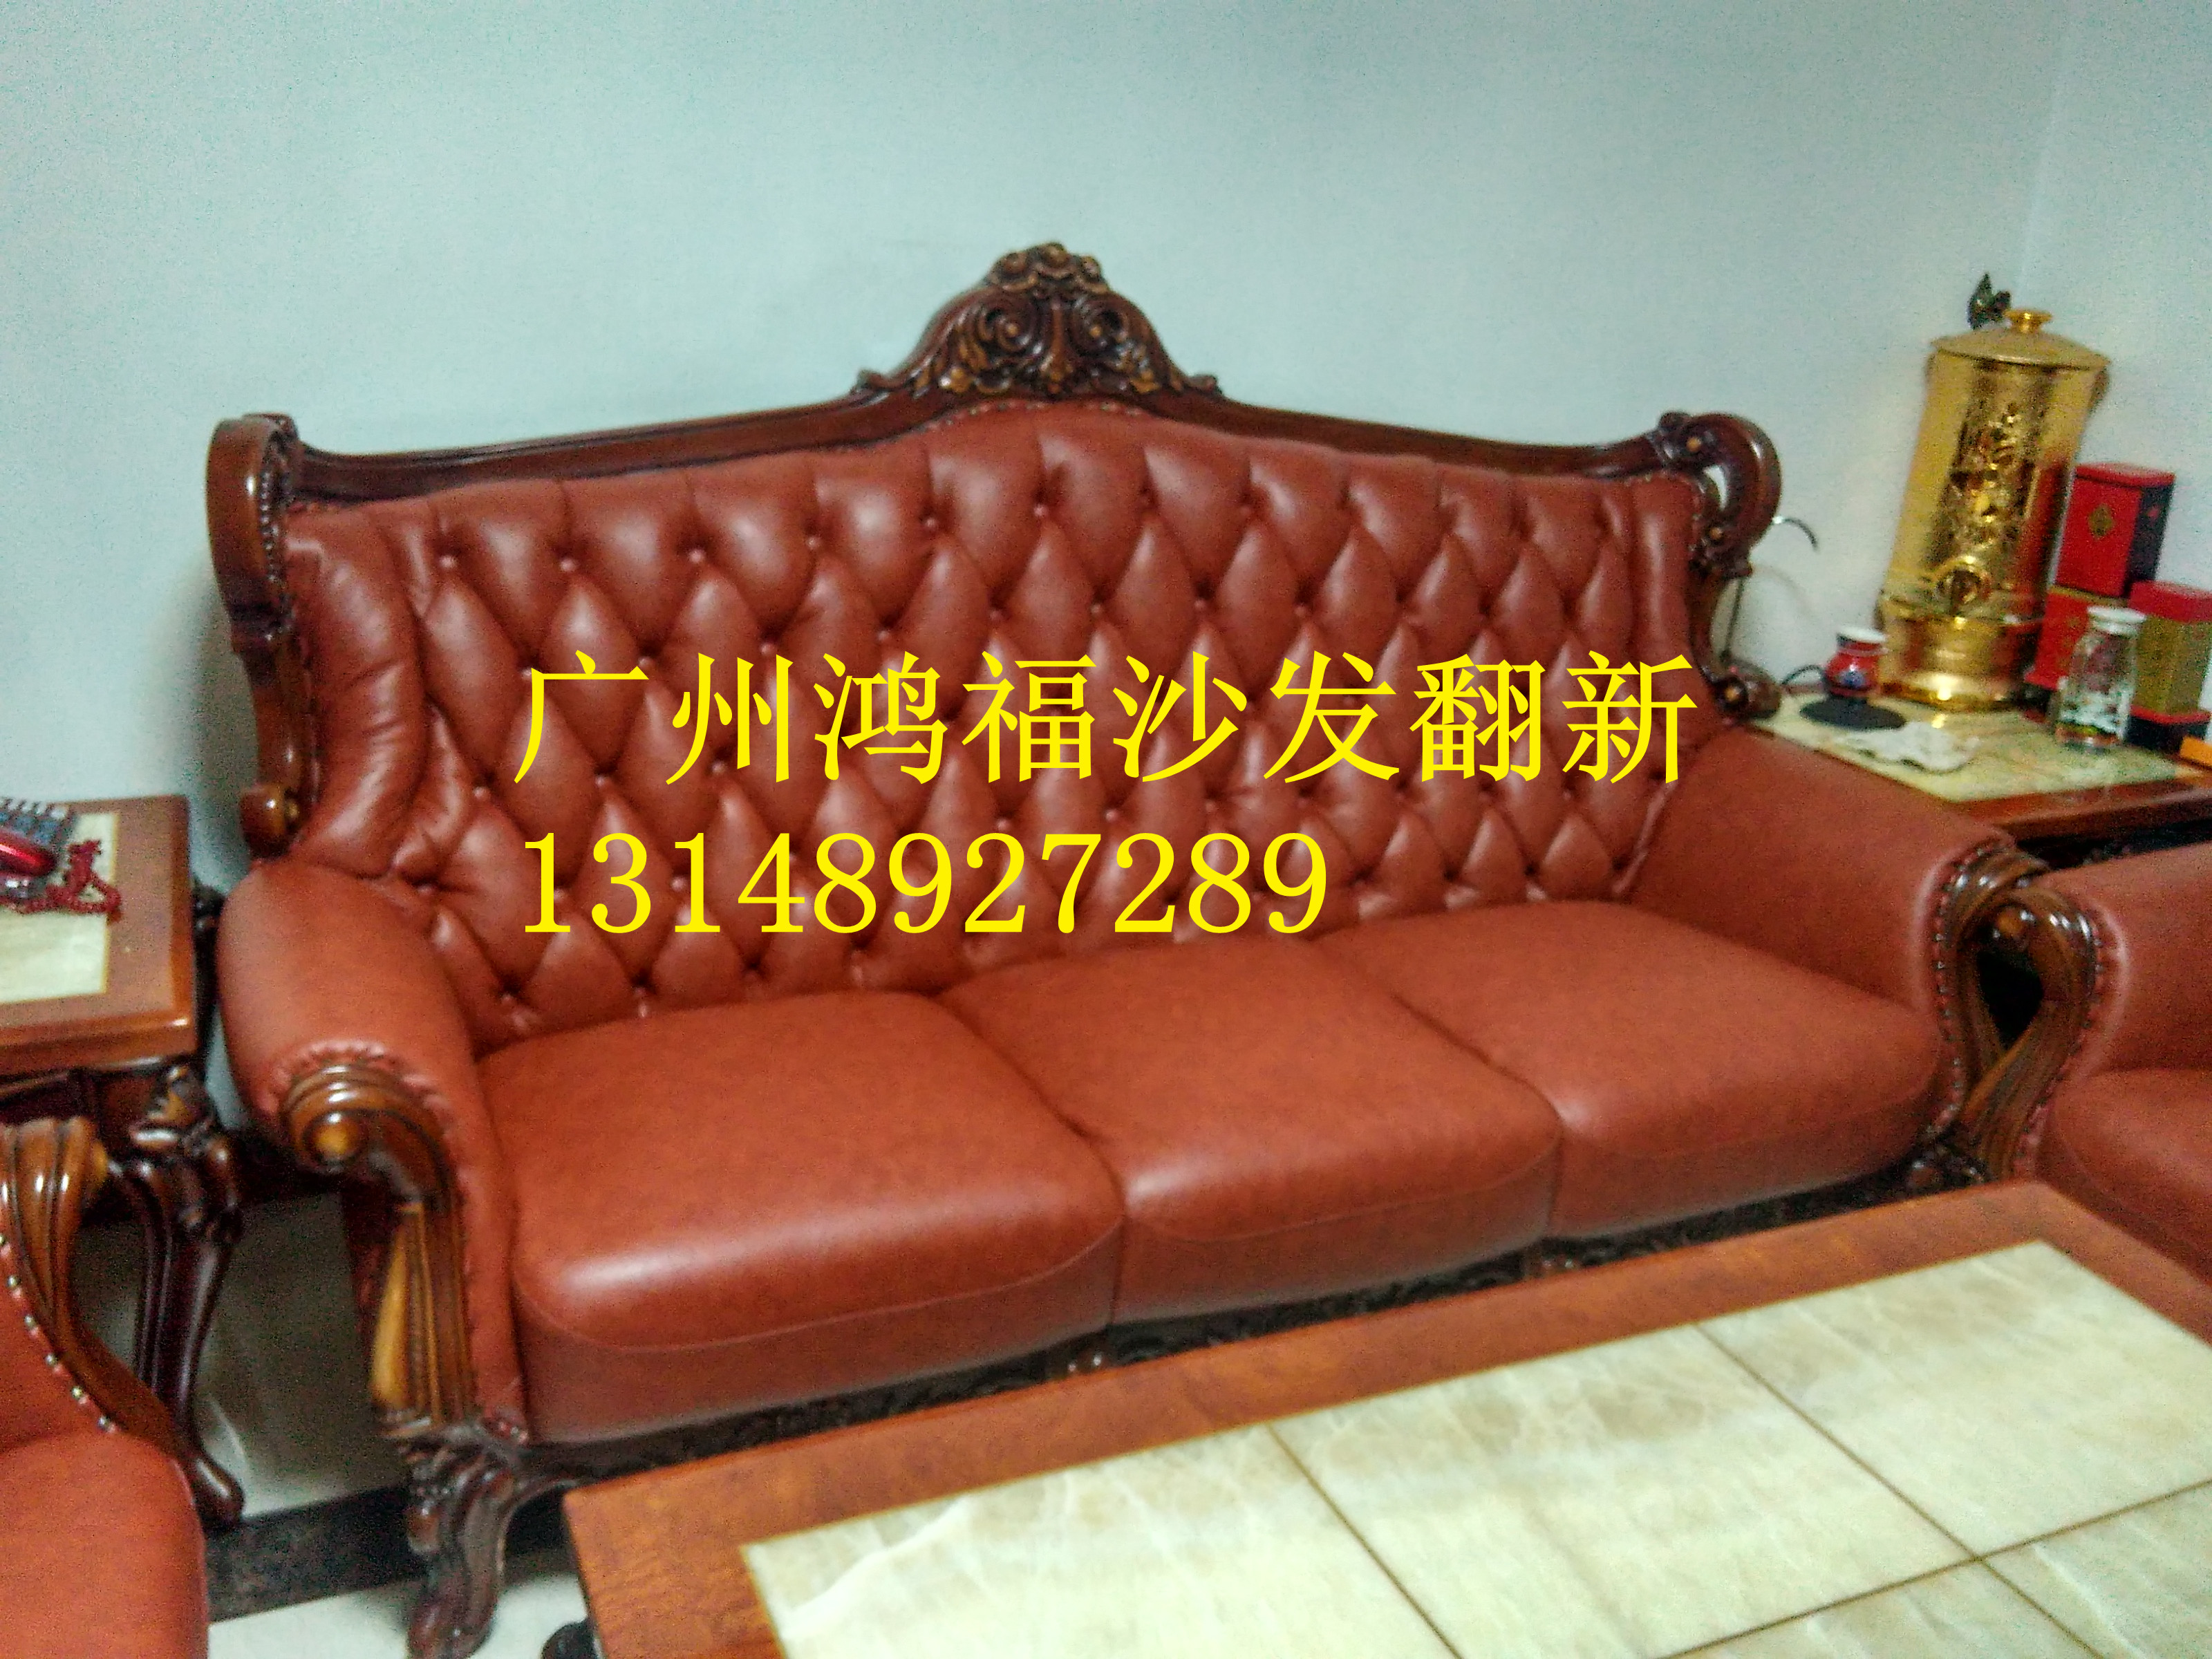 供应广州海珠区沙发翻新换皮换布、专业